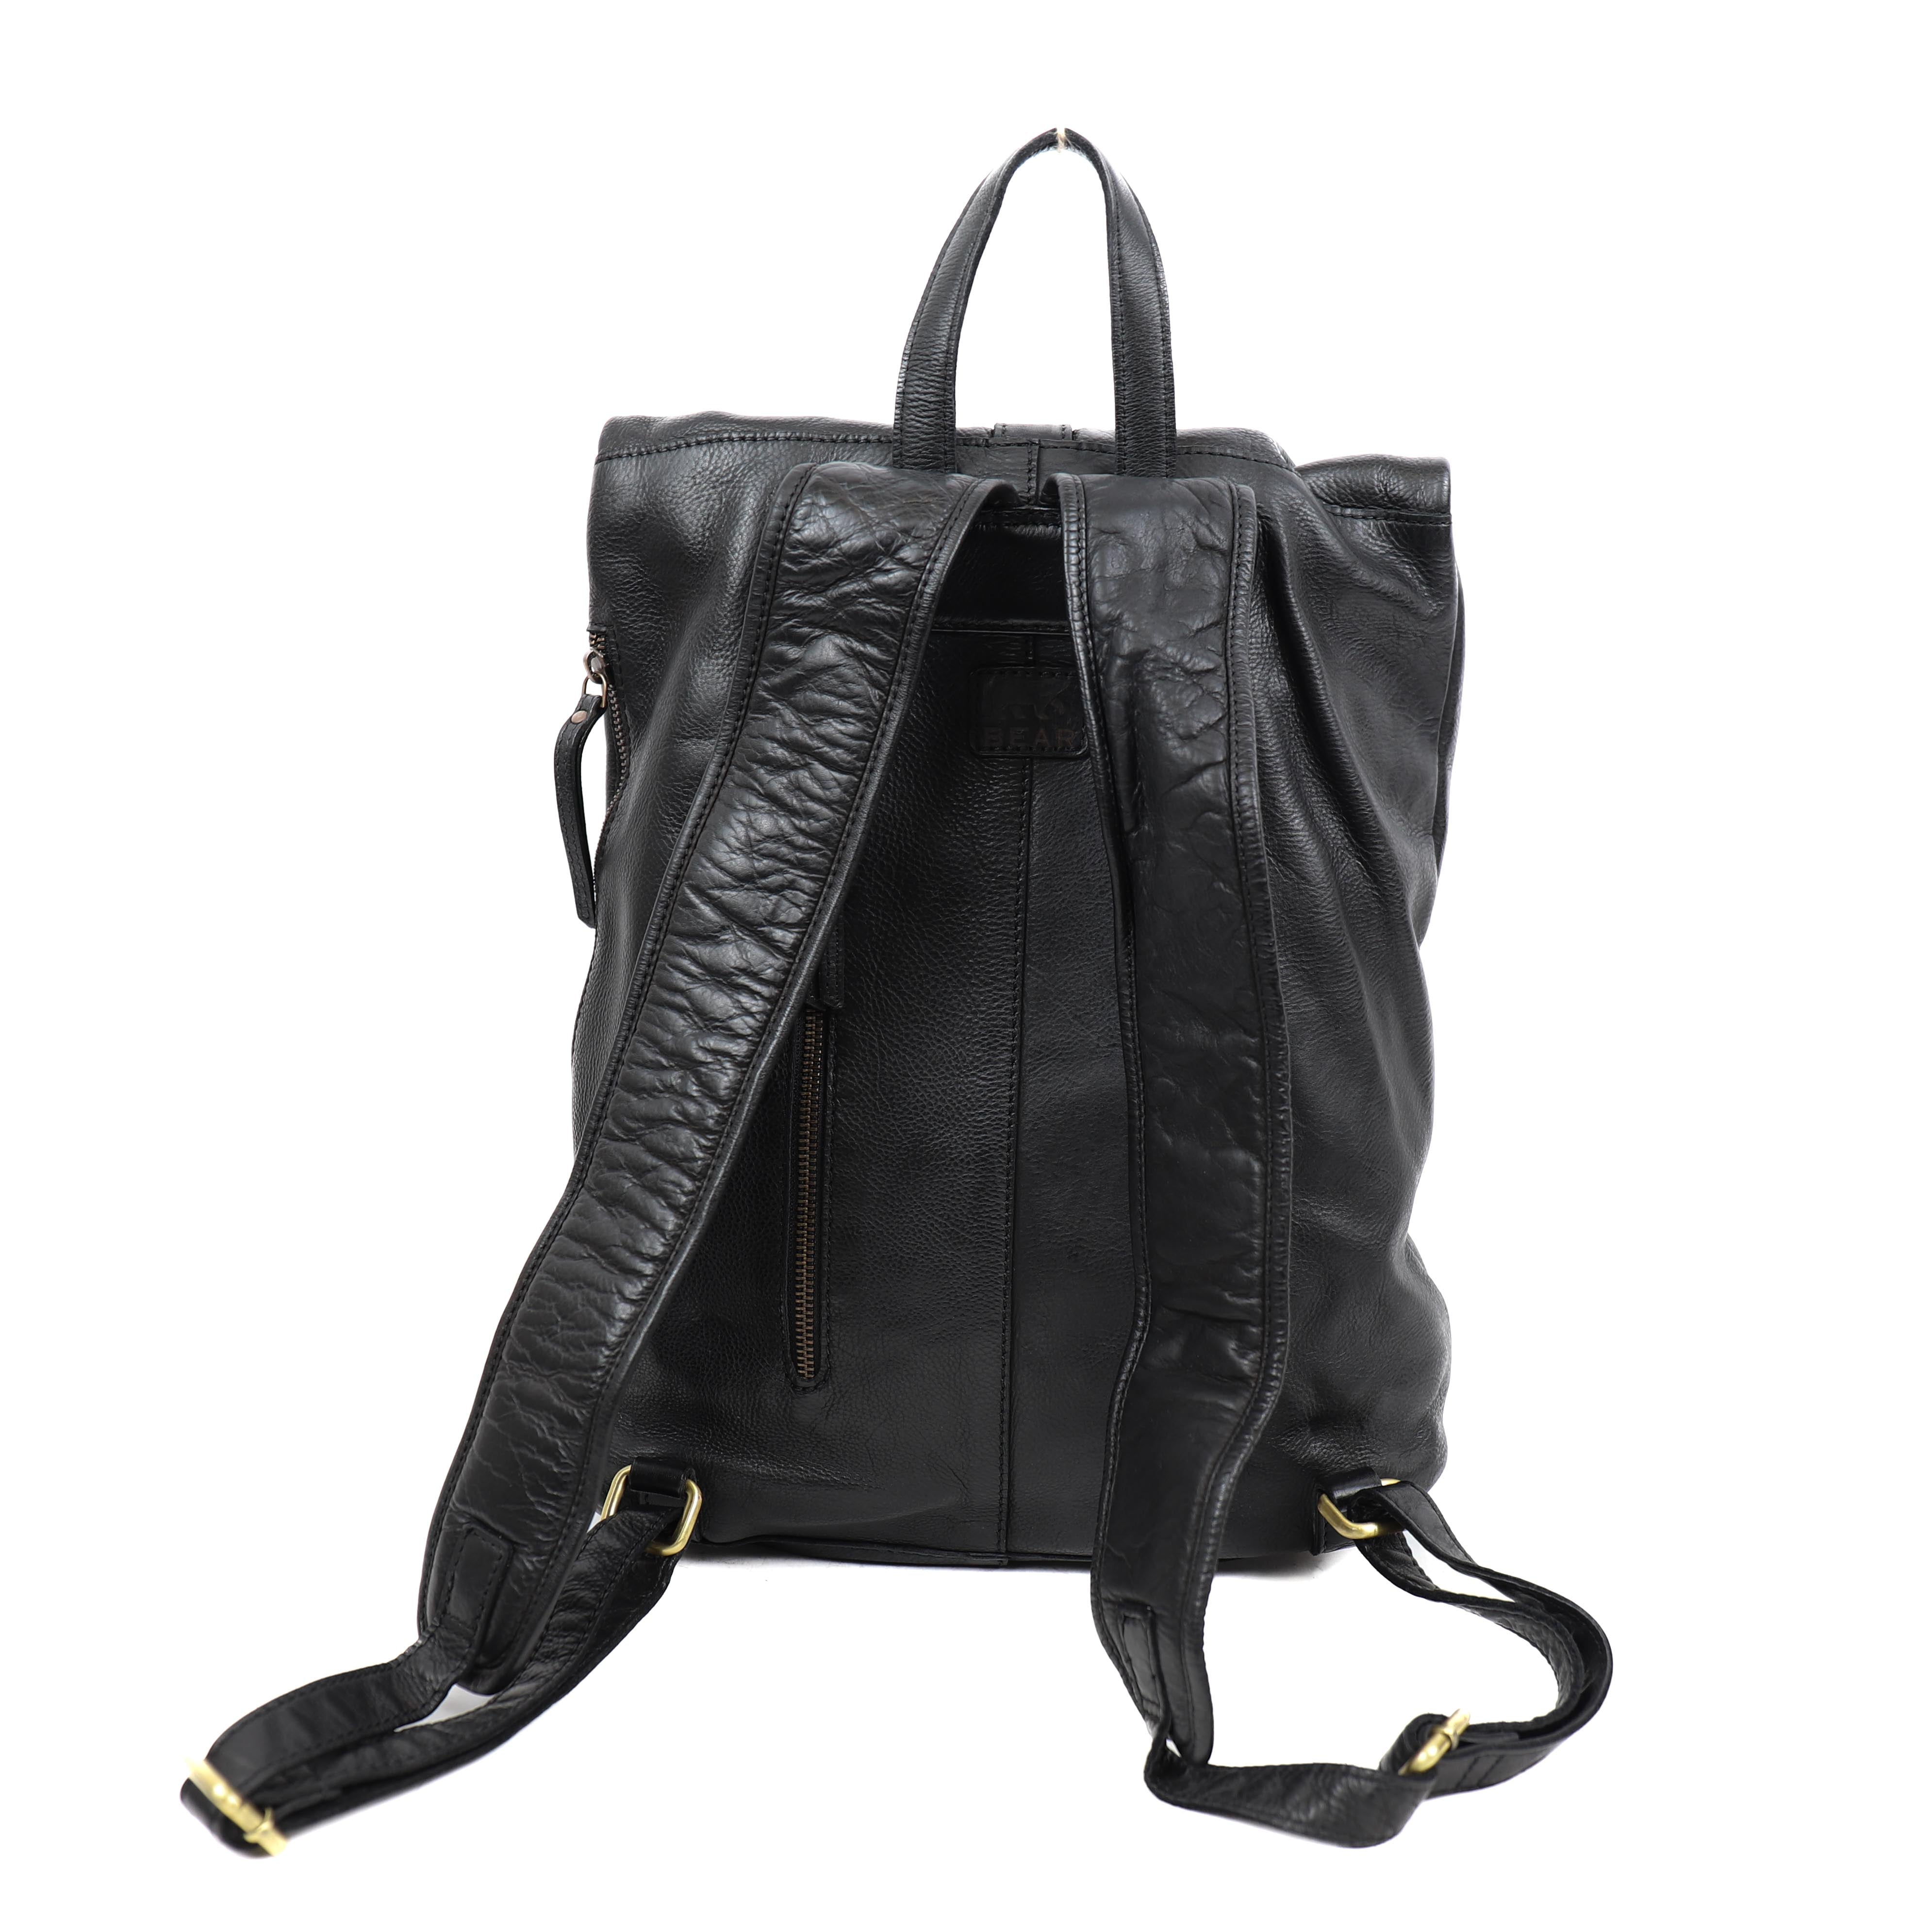 Backpack 'Rina' black